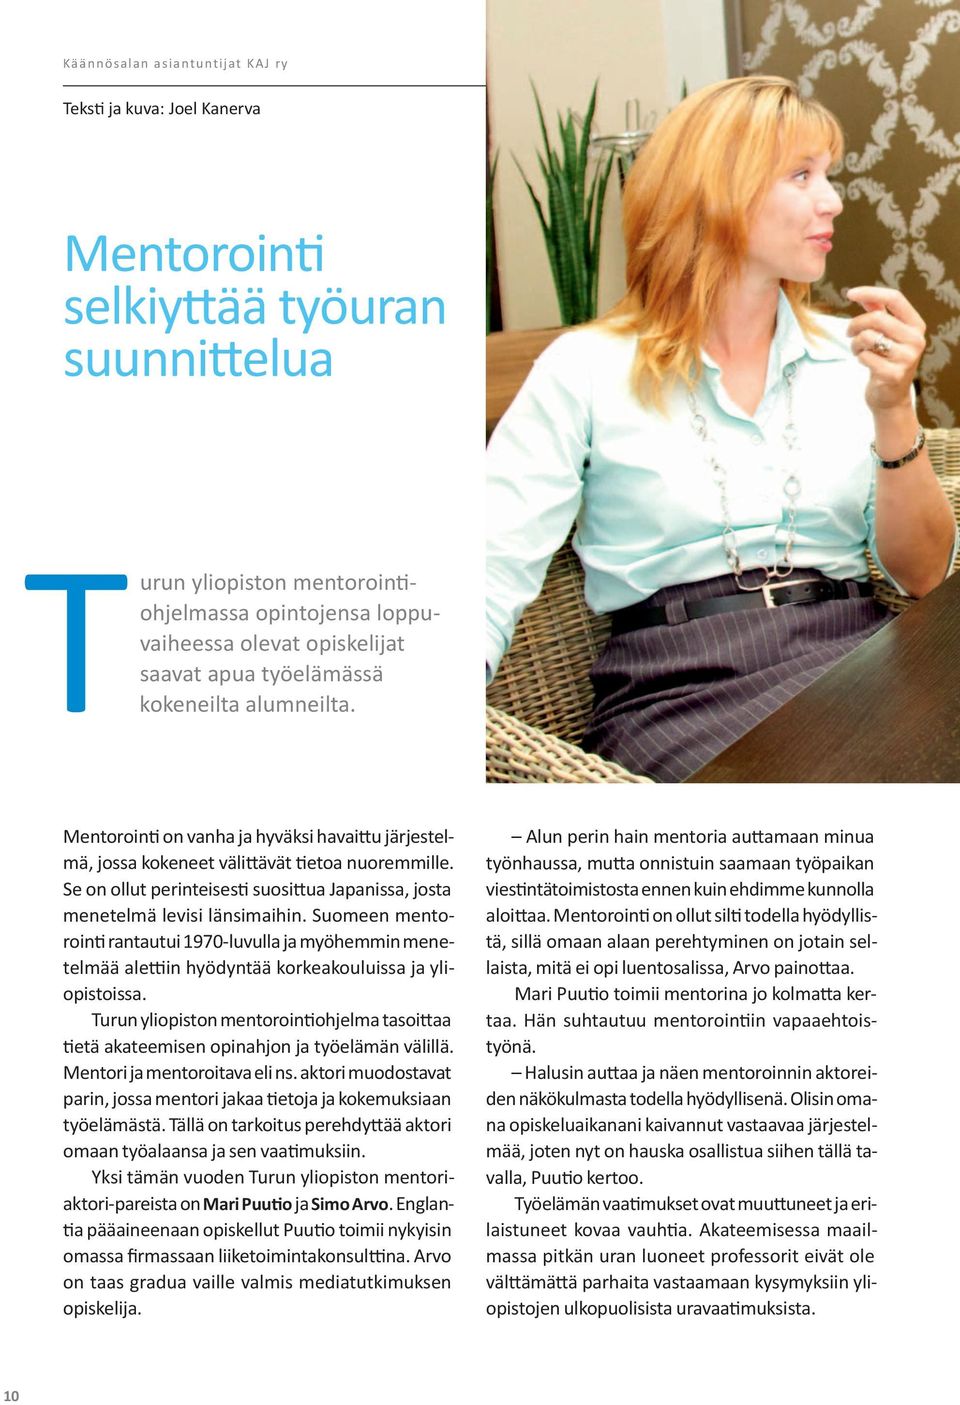 Suomeen mentorointi rantautui 1970-luvulla ja myöhemmin menetelmää alettiin hyödyntää korkeakouluissa ja yliopistoissa.